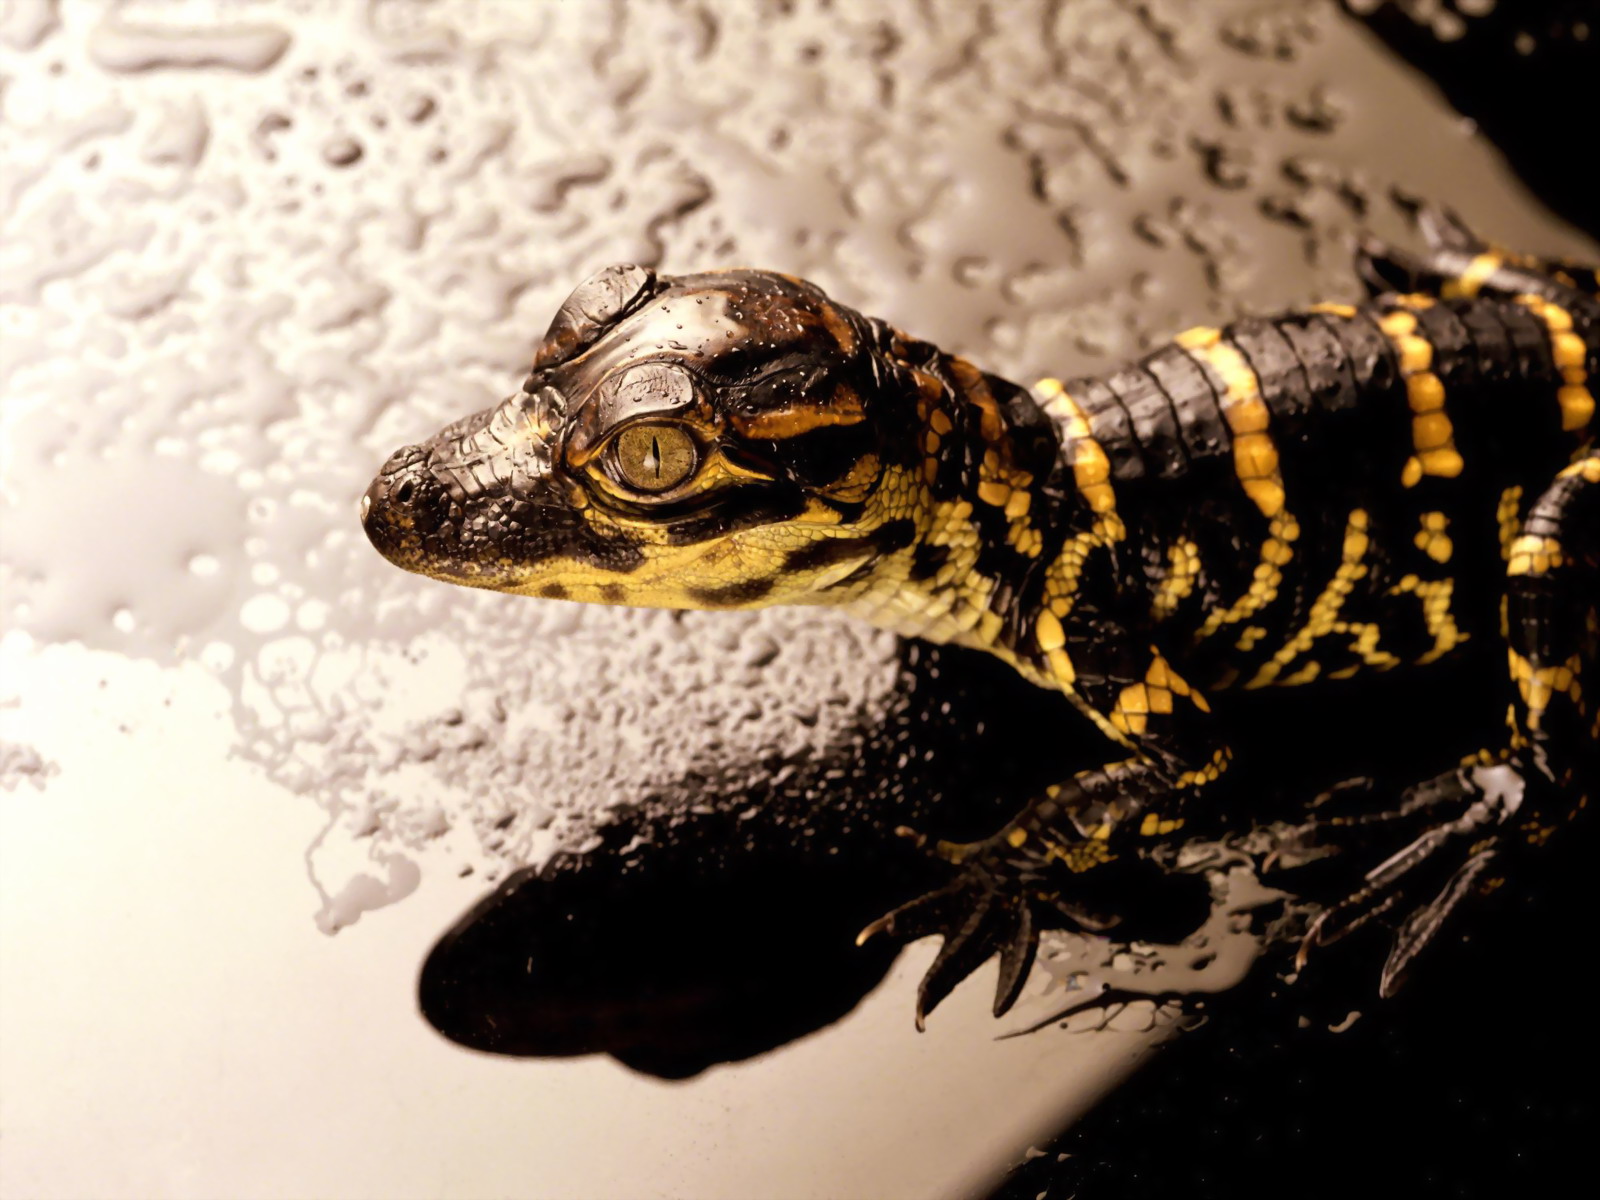 Funny Reptiles Wallpaper For Desktop Animal